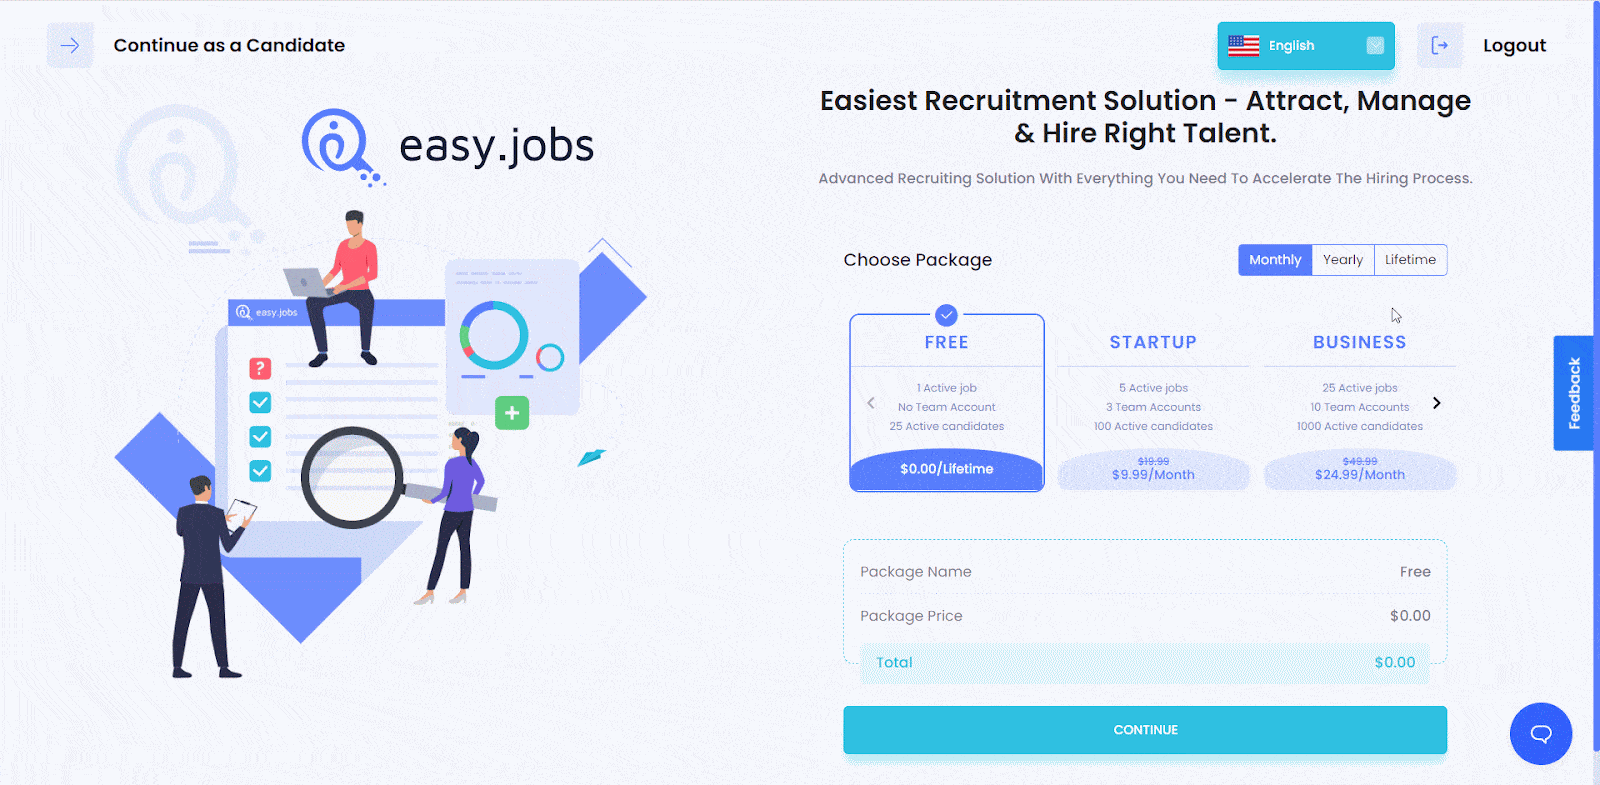 New Company Inside Easy.Jobs?